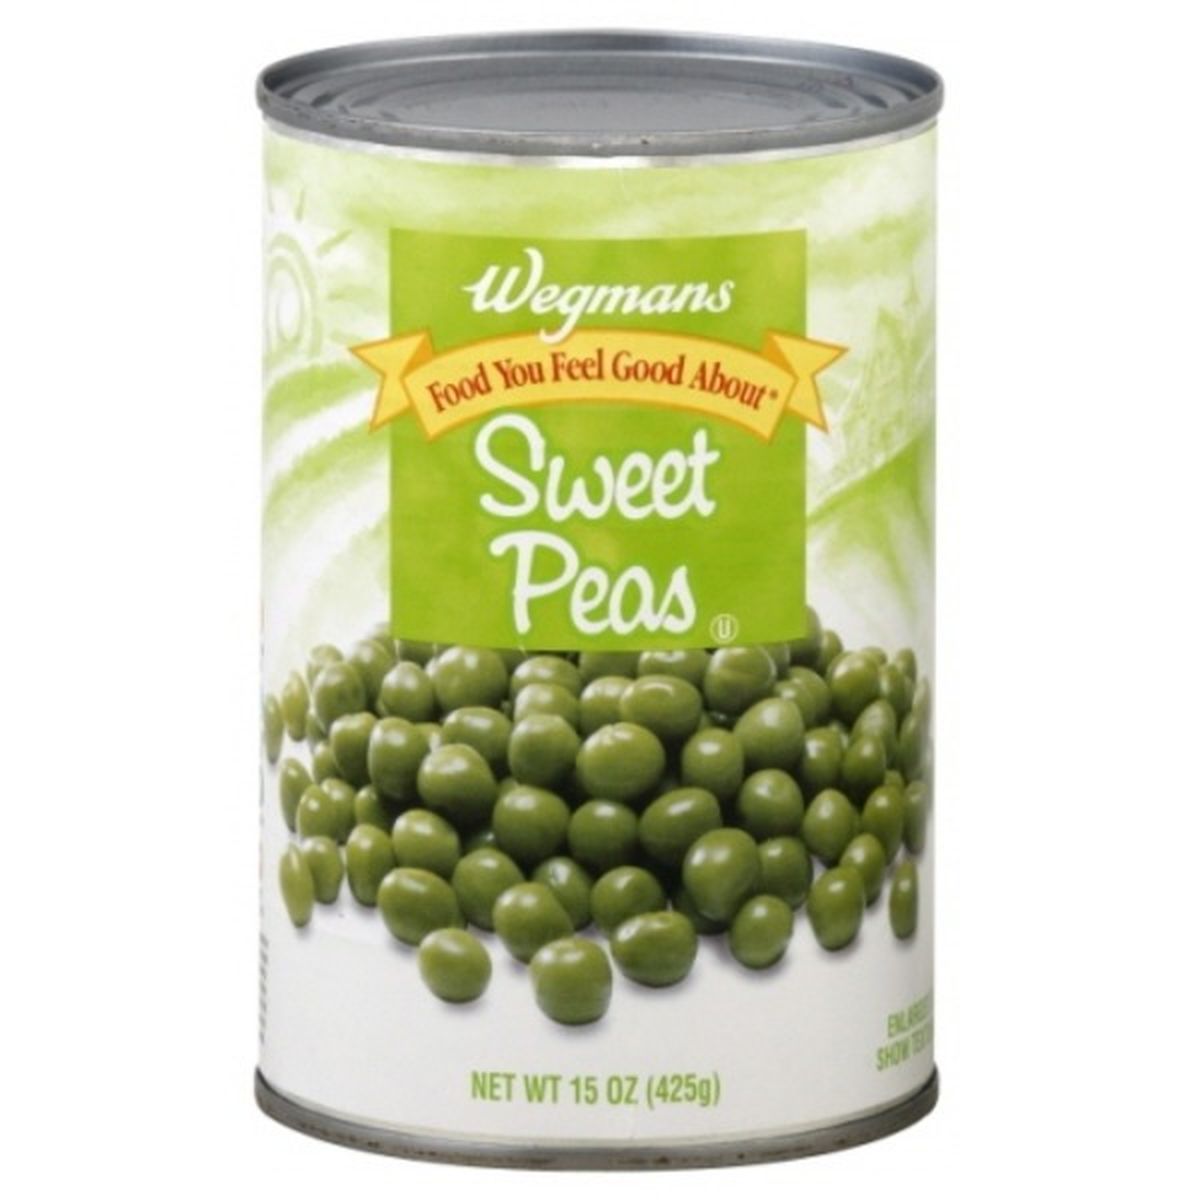 Calories in Wegmans Sweet Peas